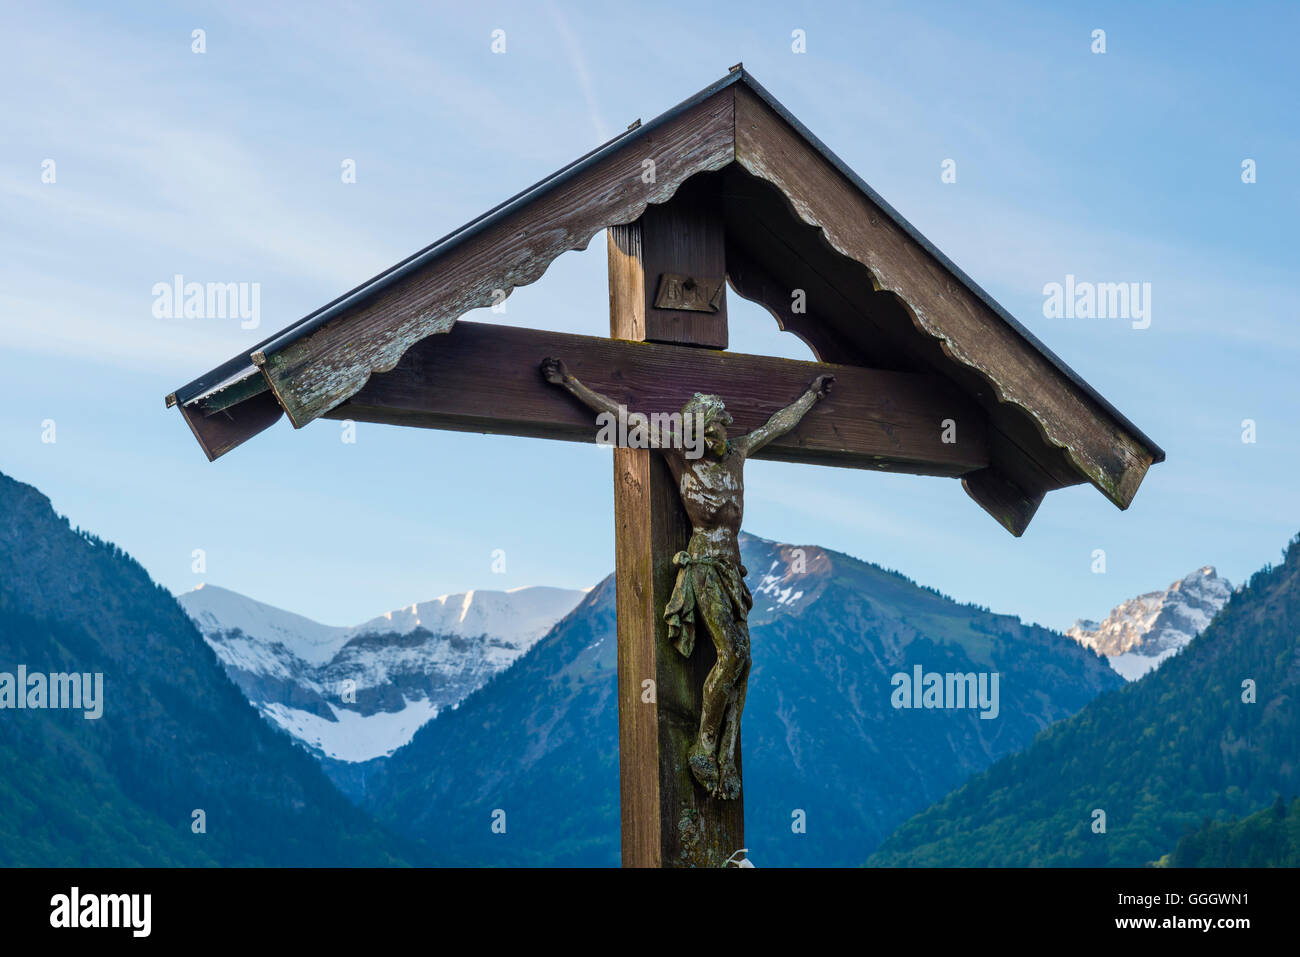 Géographie / voyage, Allemagne, Bavière, calvaire avec la statue du Christ, Loretto Meadows à Oberstdorf Allgaeu, Alpes, Allgaeu, Freedom-Of-Panorama Banque D'Images